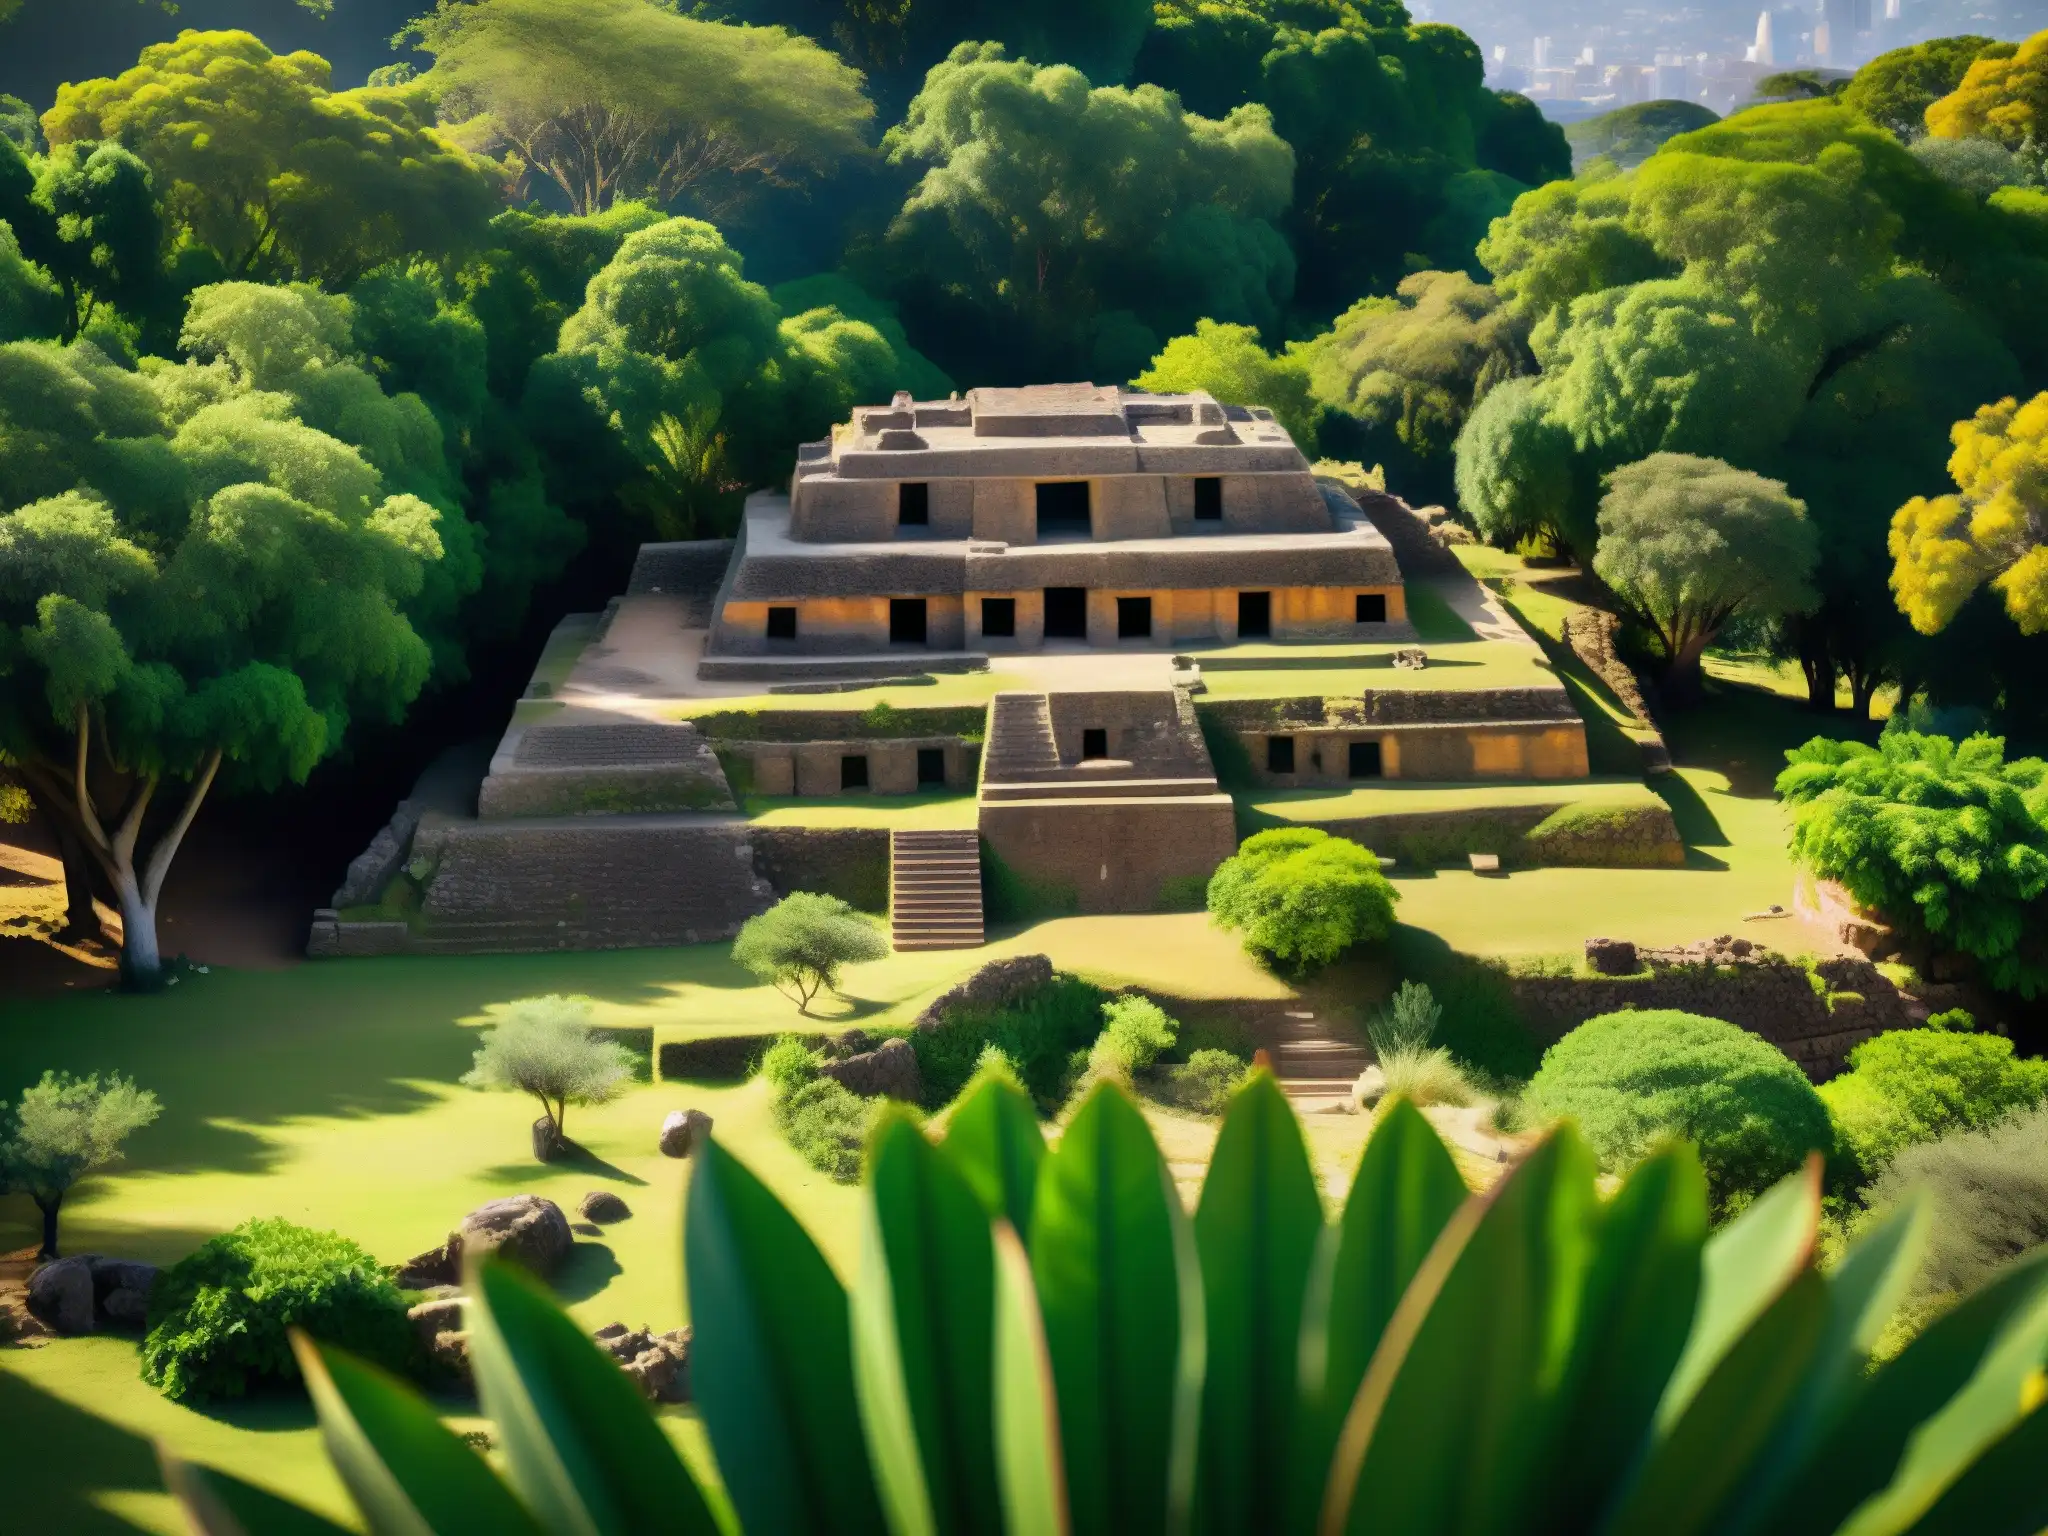 Imagen detallada de las ruinas del tesoro de la Marquesa en la Ciudad de México, con atmósfera legendaria y mística